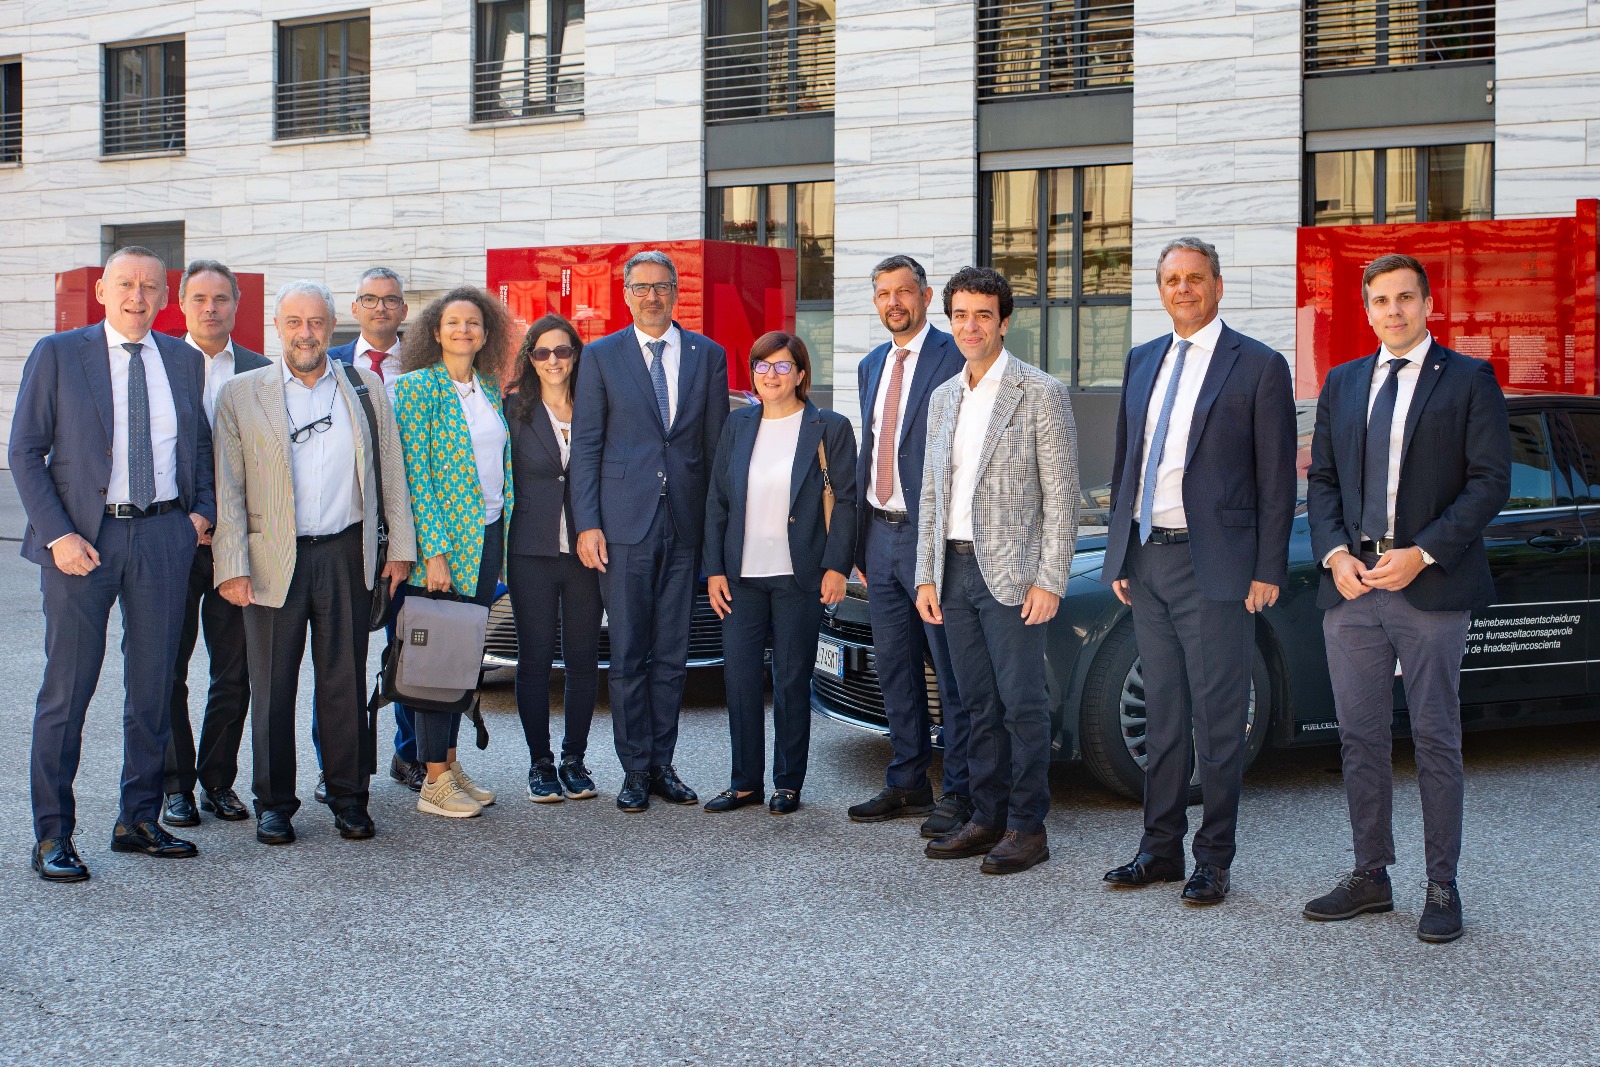 Galleria Puglia e Alto Adige firmano un accordo per la promozione dell’uso dell’idrogeno nel settore trasporti e della transizione ecologica - Diapositiva 5 di 9